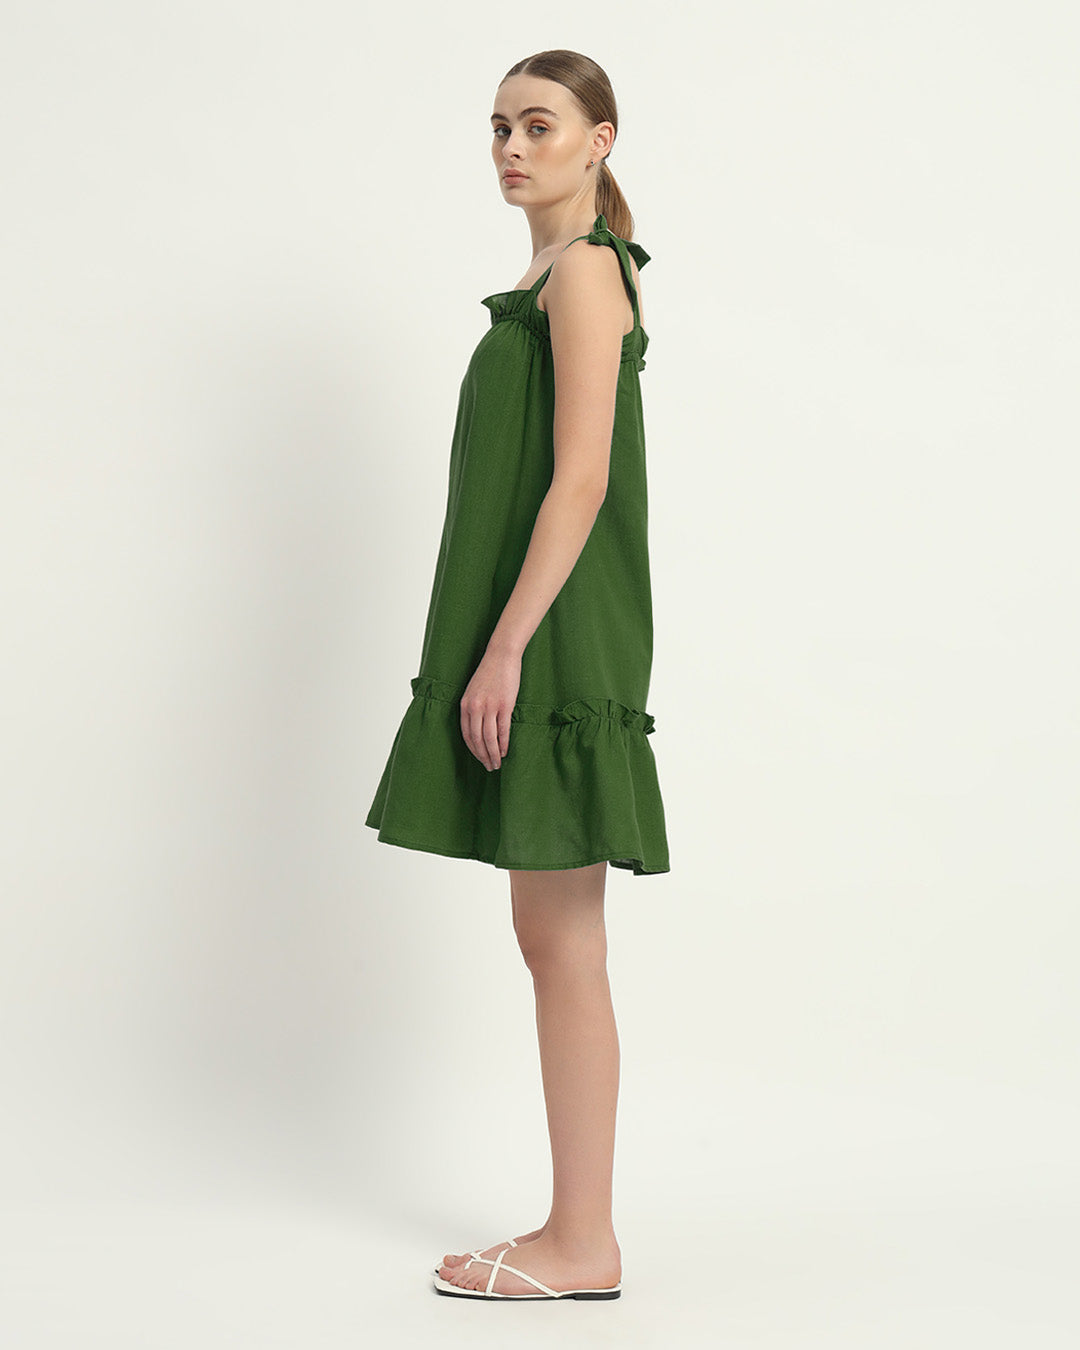 The Amalfi Emerald Cotton Dress